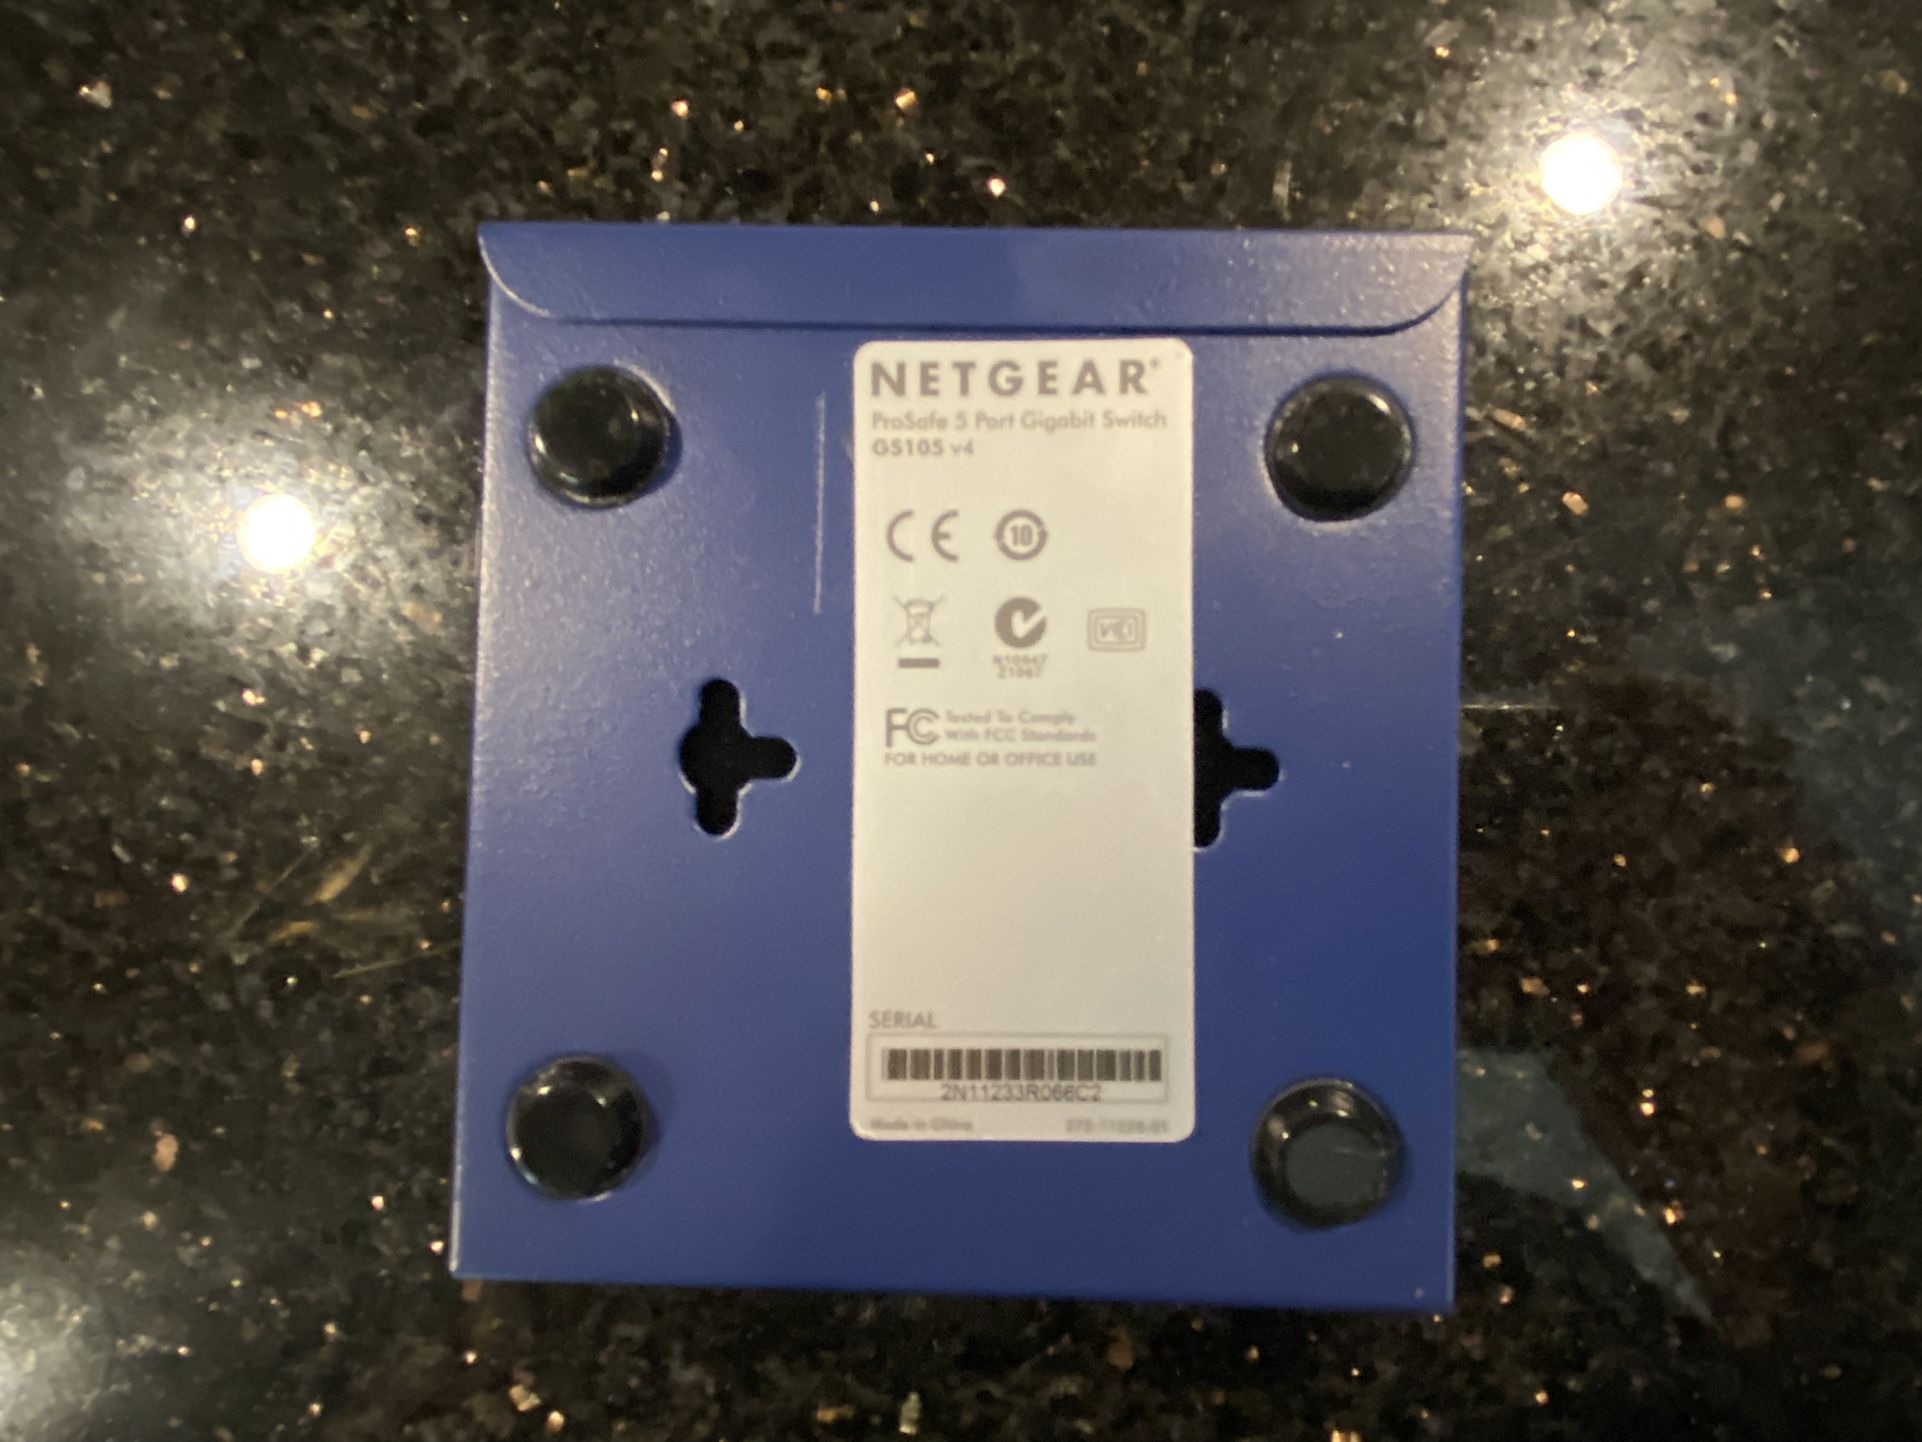 NetGear ProSafe 5-Port Gigabit Desktop Switch GS105